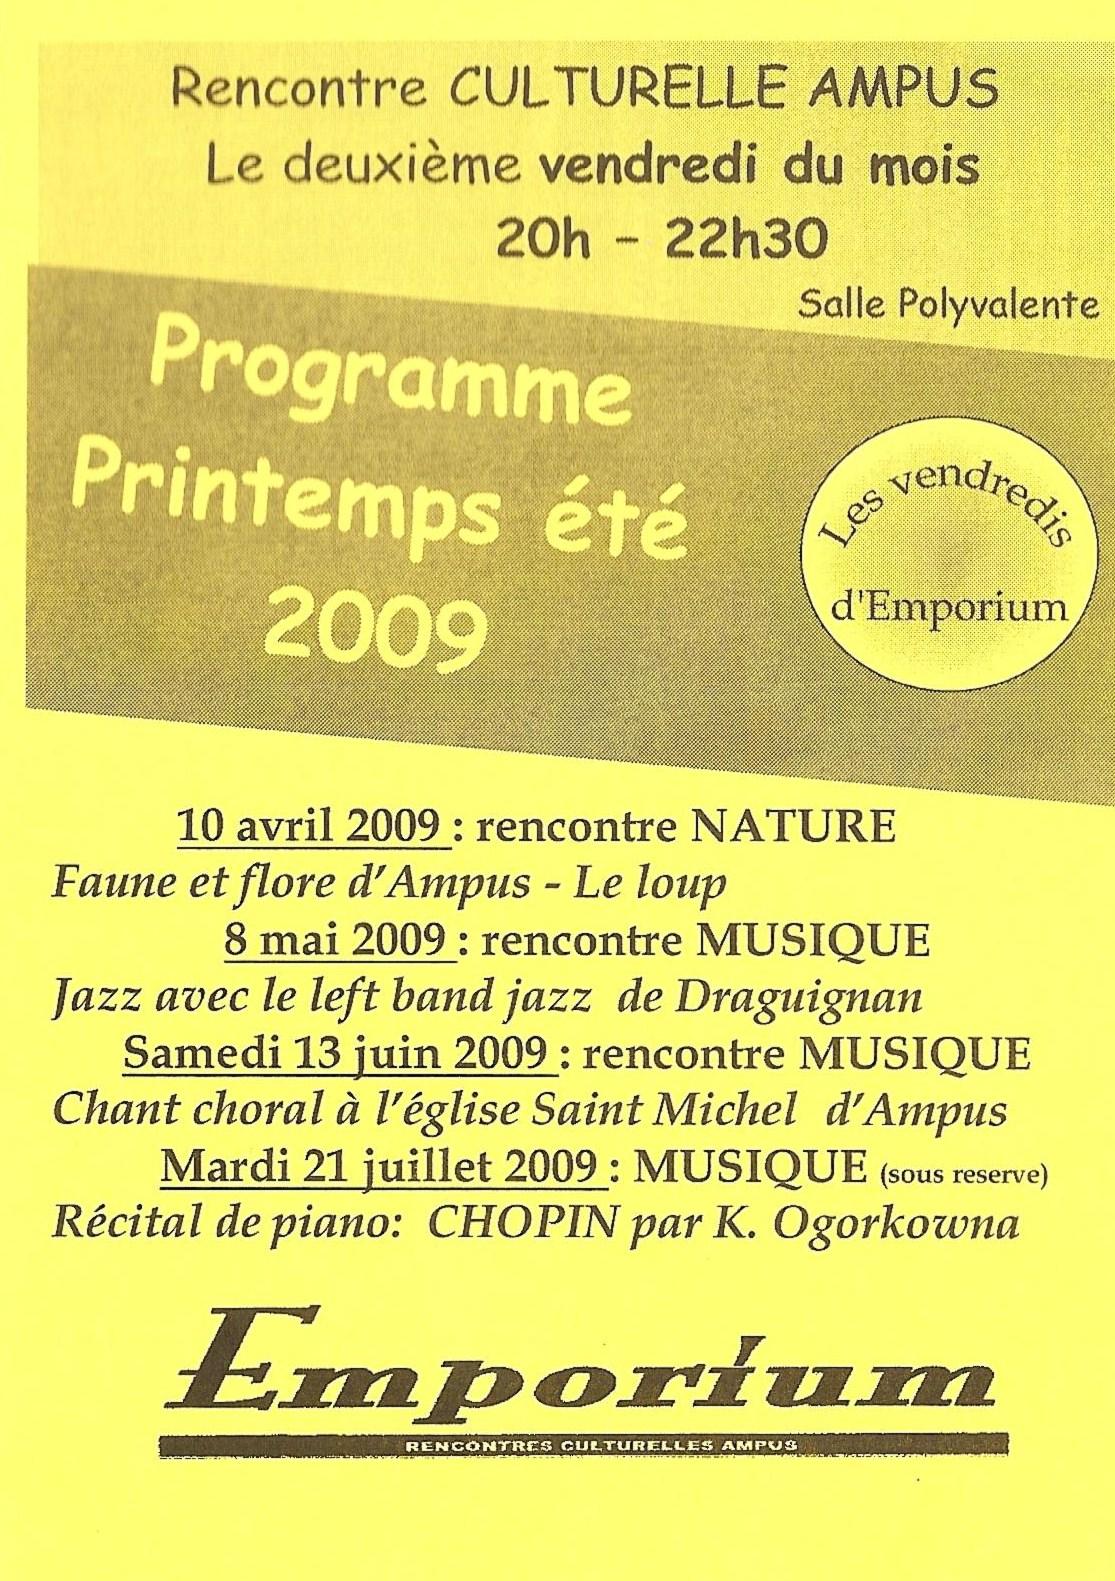 programme-printemps-ete-2009.1237300511.jpg